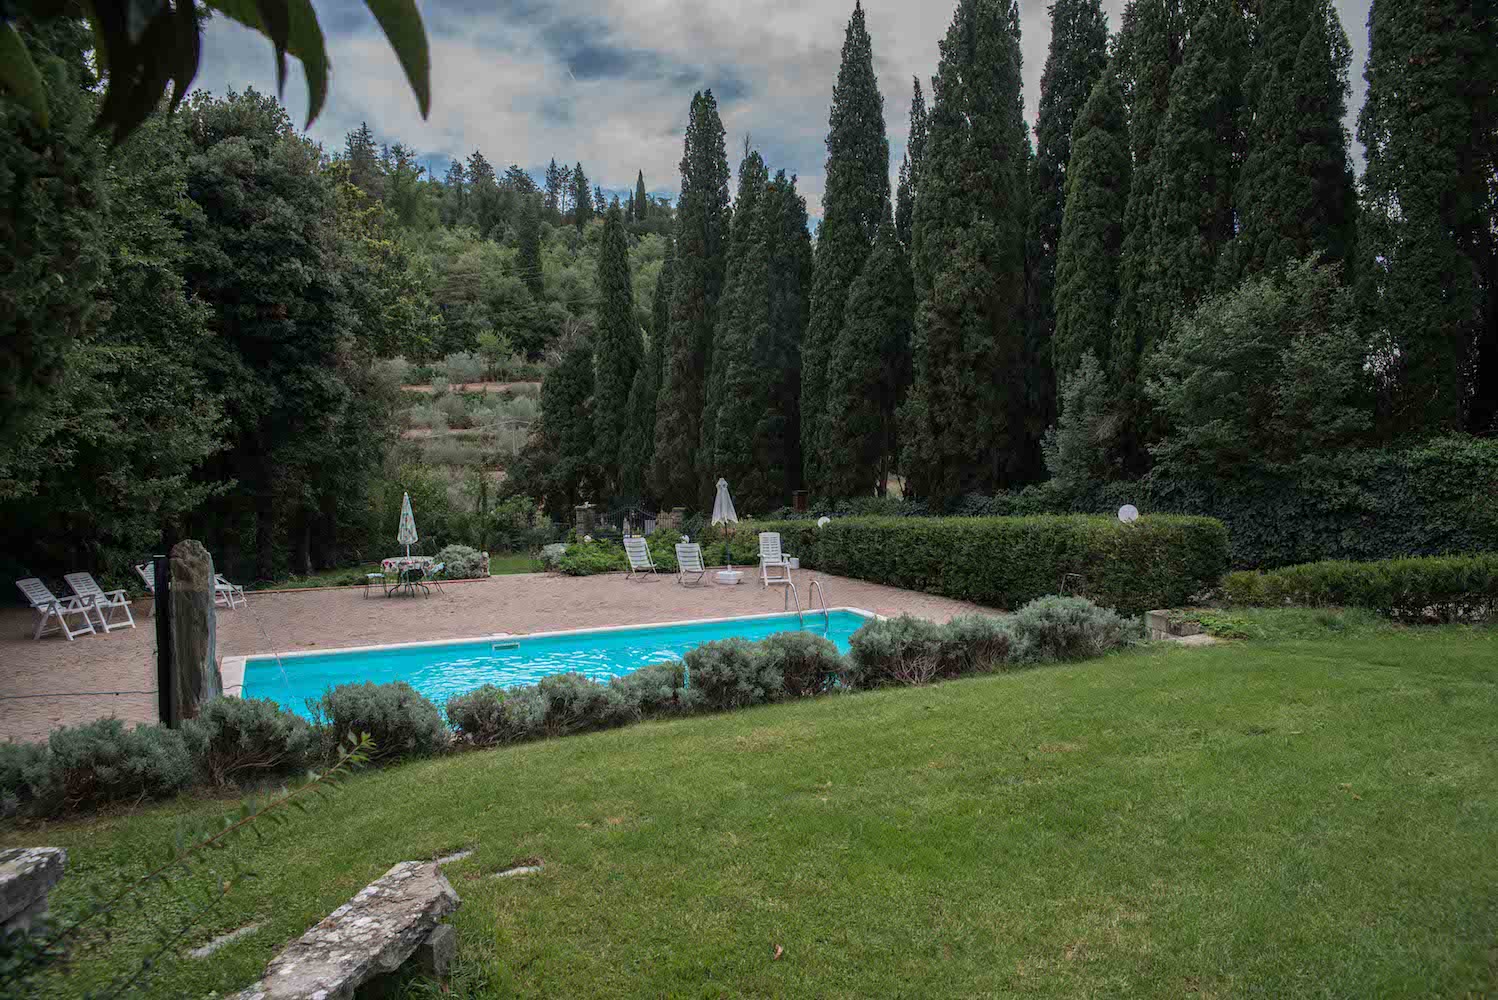 Villa Sargiano B&B